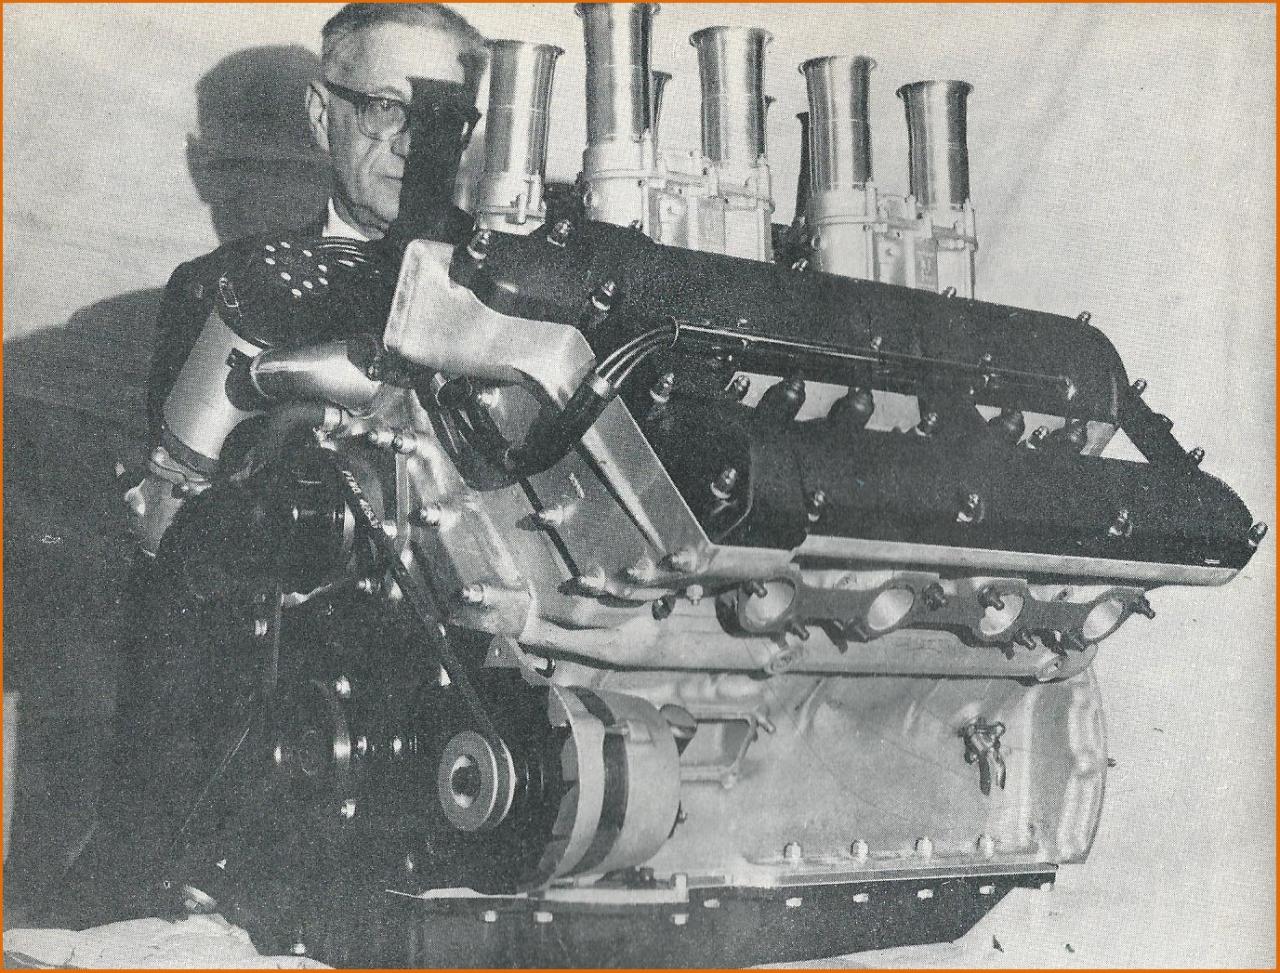 Inżynier Tadeusz Marek z 5-litrowym silnikiem swojego projektu. Rok 1966. / Foto: www.dbsvantage.com